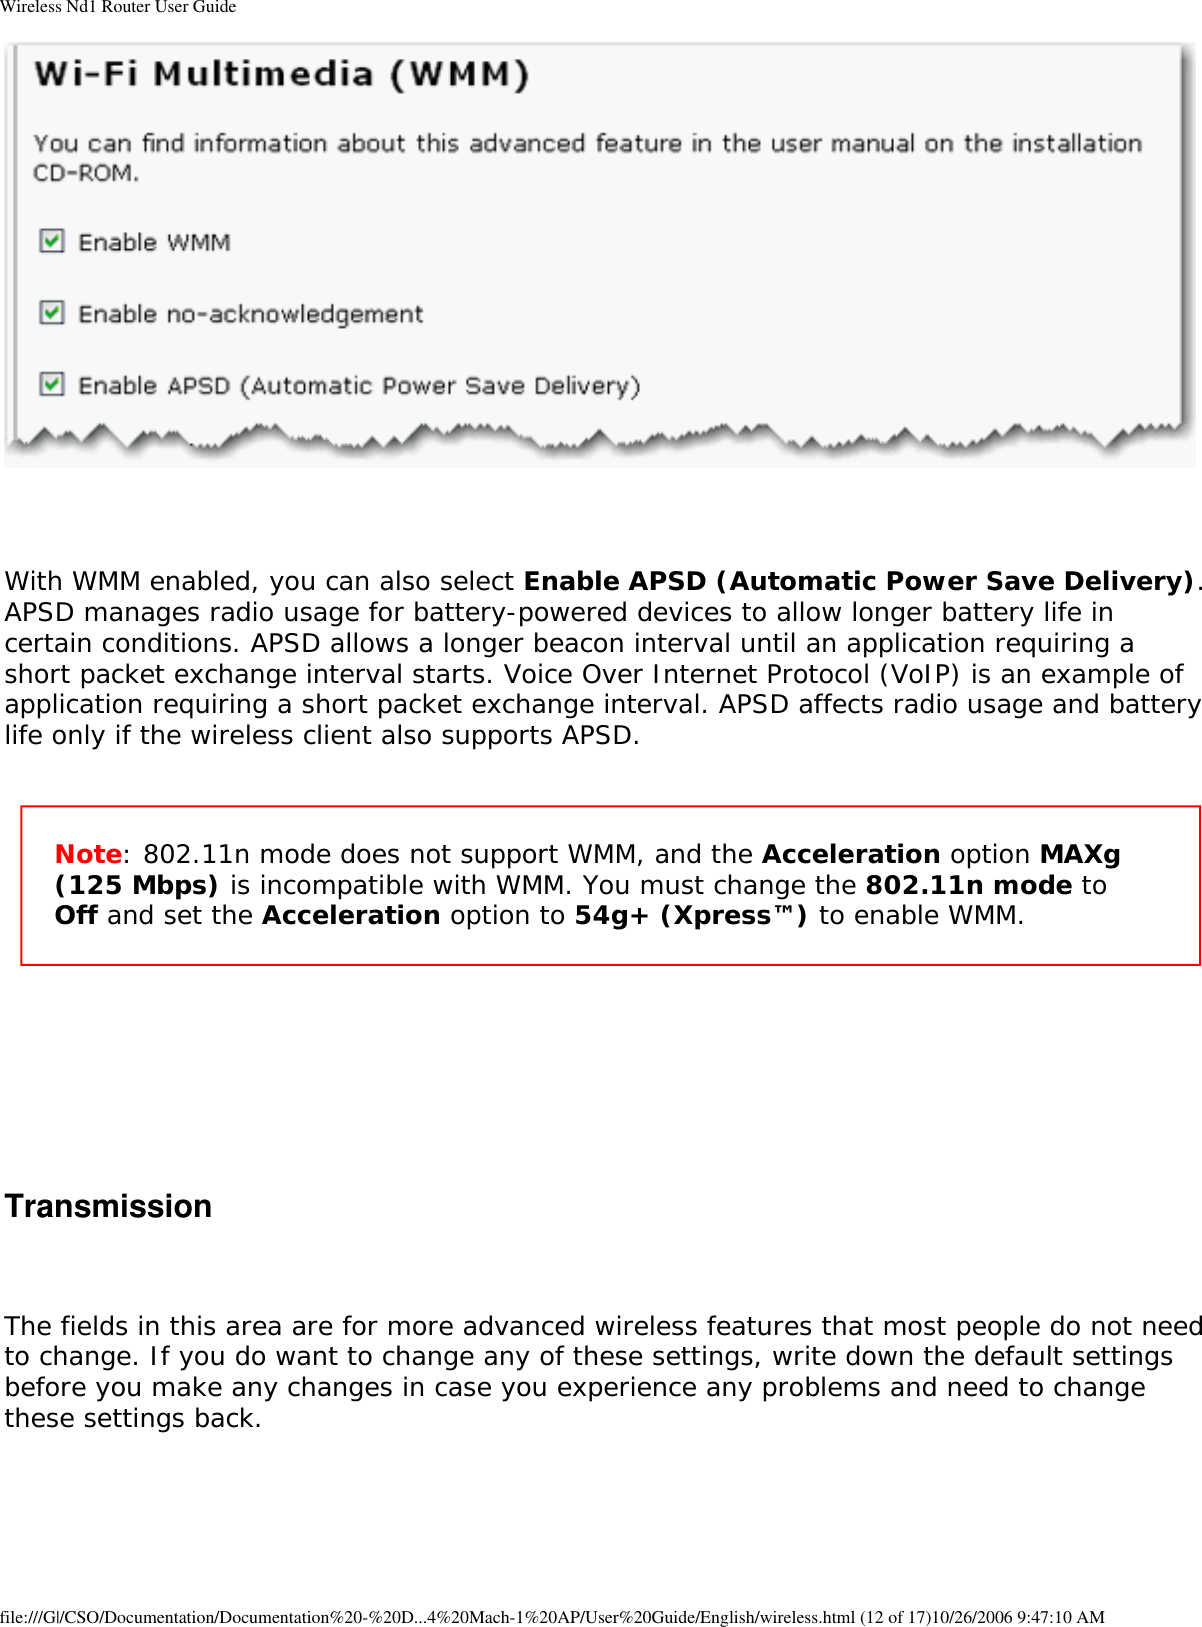 Page 48 of GemTek Technology A950630GN USRobotics Wireless Nd1 Access Point User Manual Manual